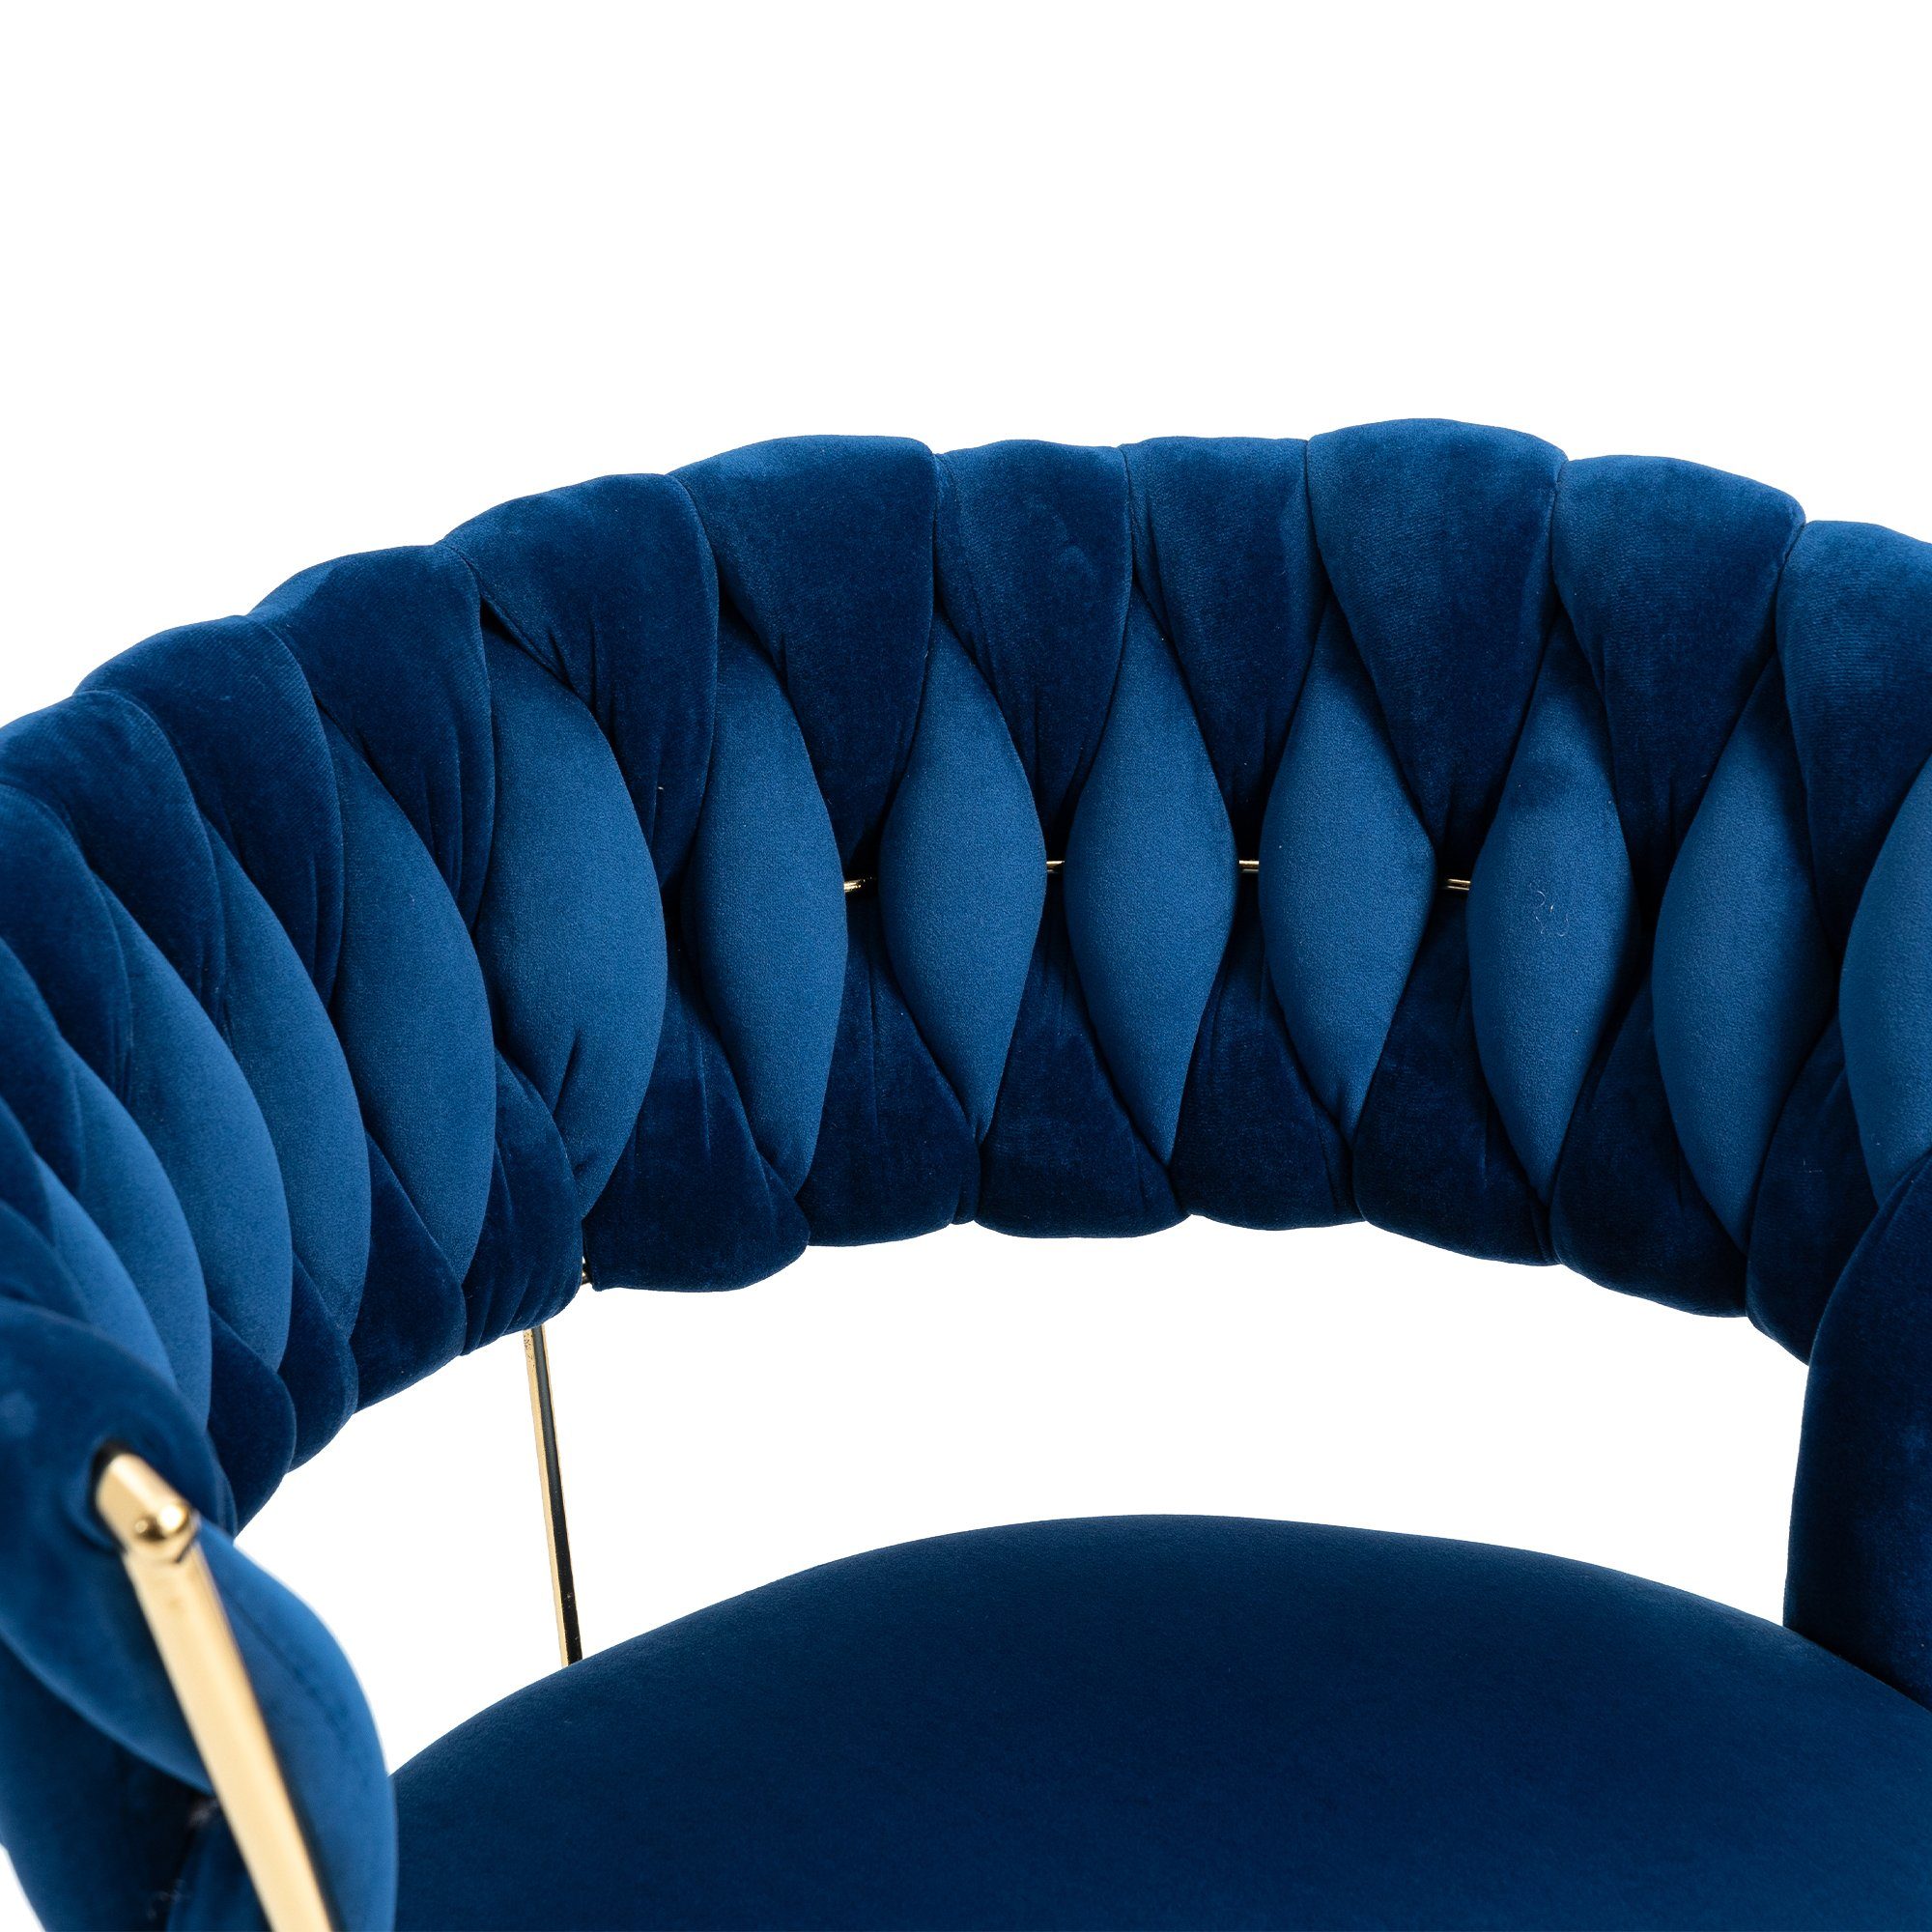 Odikalo Drehstuhl Bürostuhl Freizeit Make-up Samt goldene mehrfarbig drehbar Blau Beine 360°